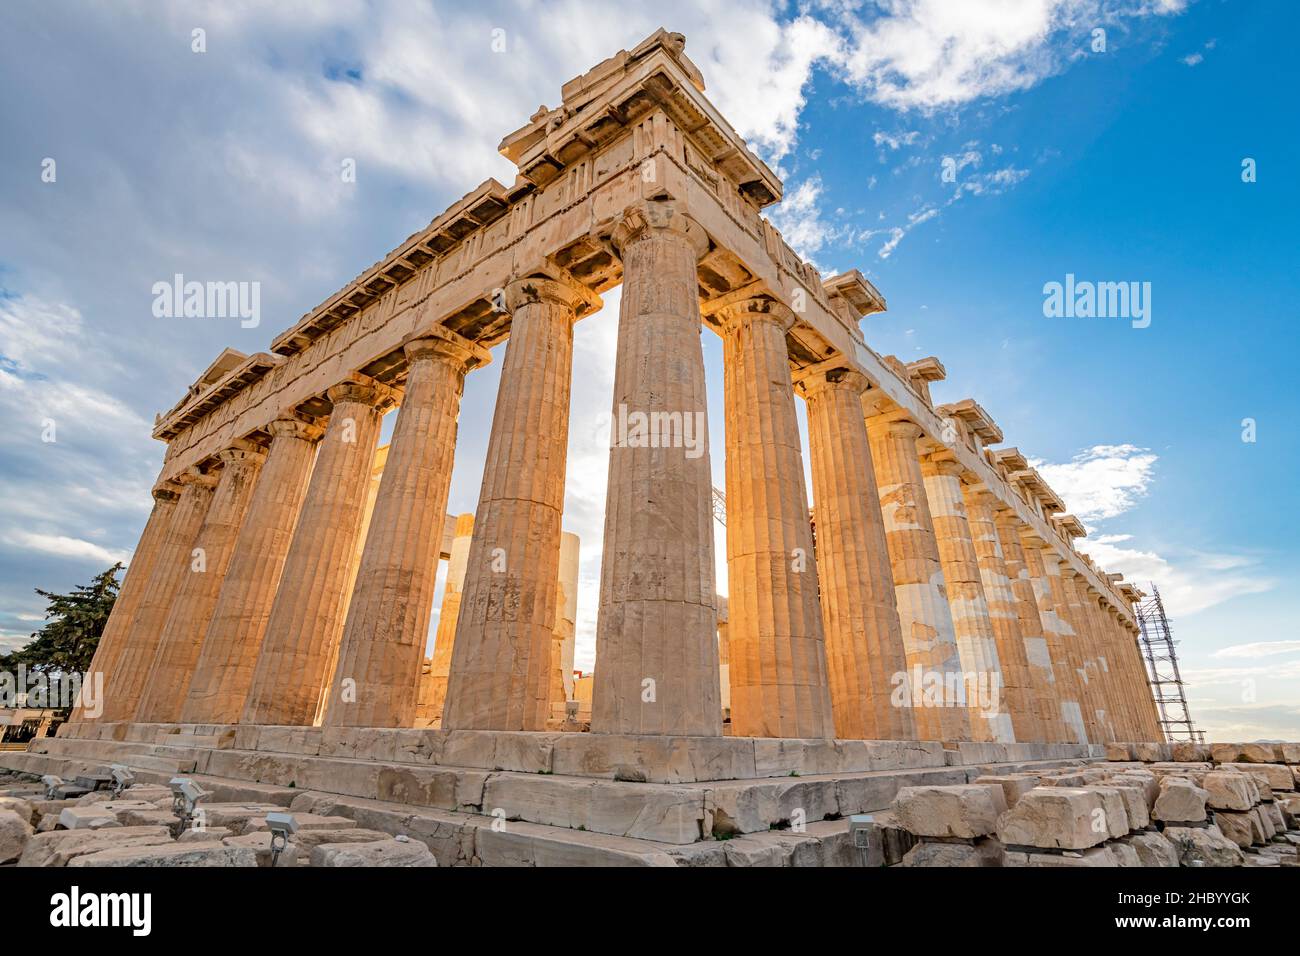 Horizontal view of in the Parthenon aka the Acropolis in Athens, Greece. Stock Photo